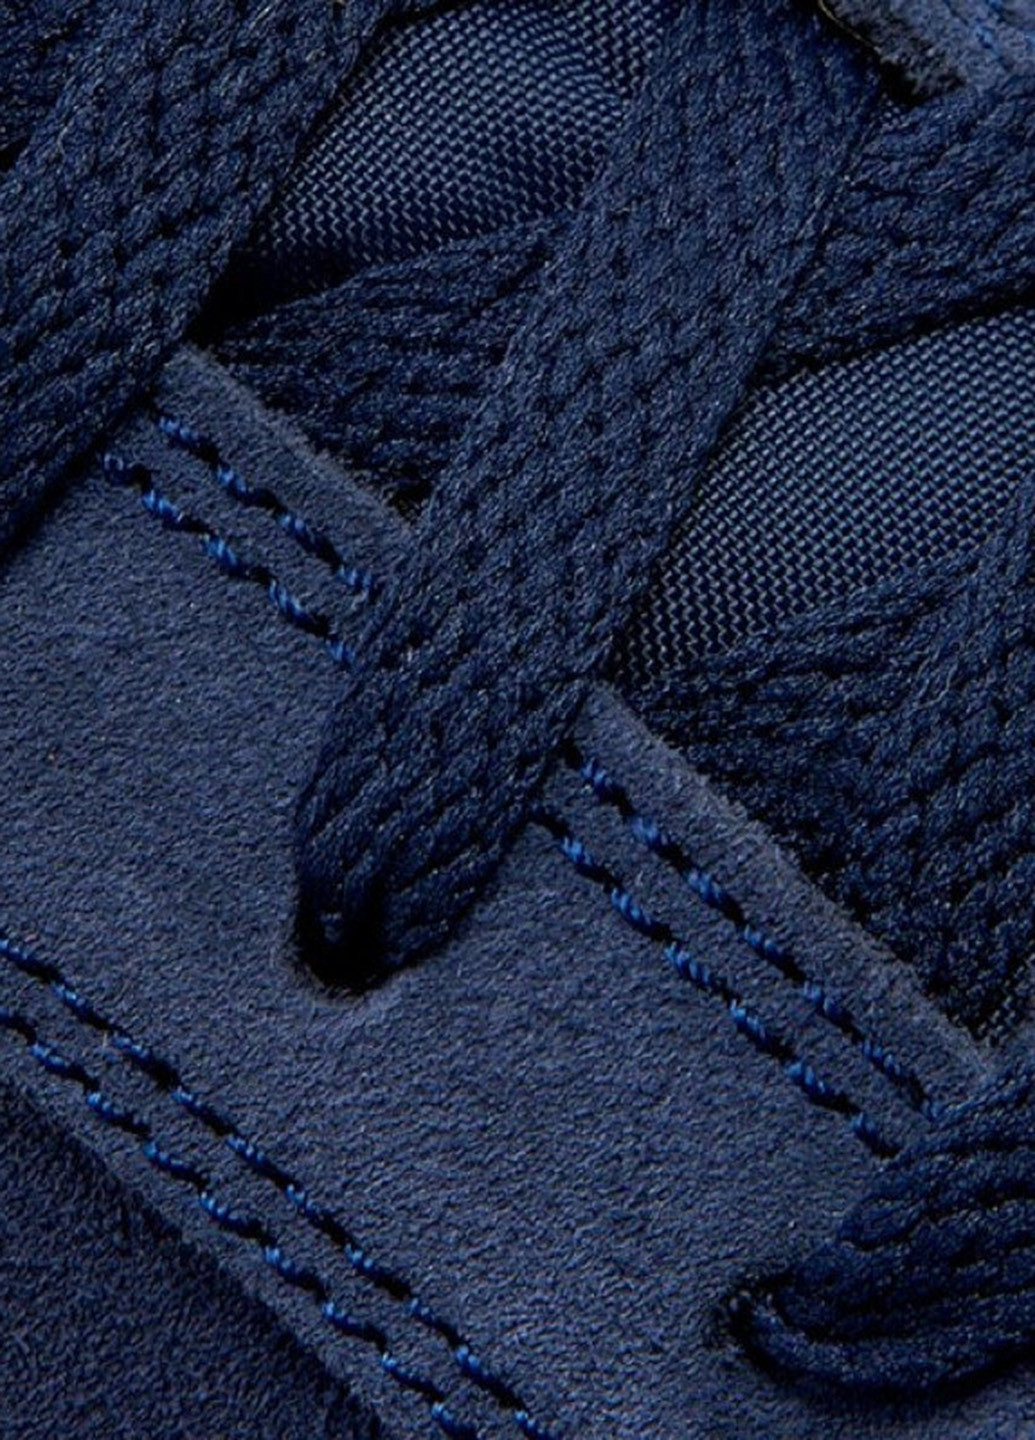 Темно-синие демисезонные кроссовки Nike COURT ROYALE SUEDE